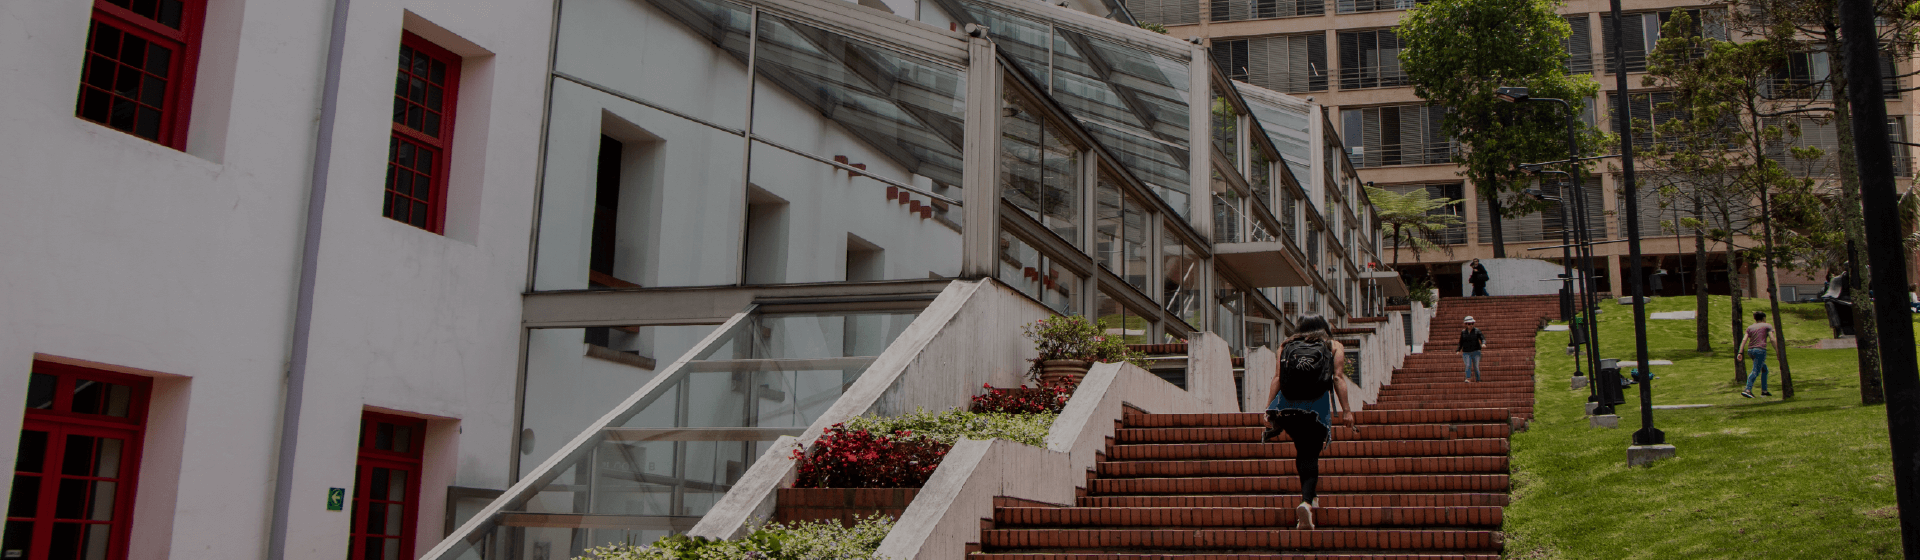 Pregrado y posgrados de la Facultad de Derecho. Se visualizan dos edificios de la Universidad y parte de El Bobo. Estudiante subiendo por unas escaleras.